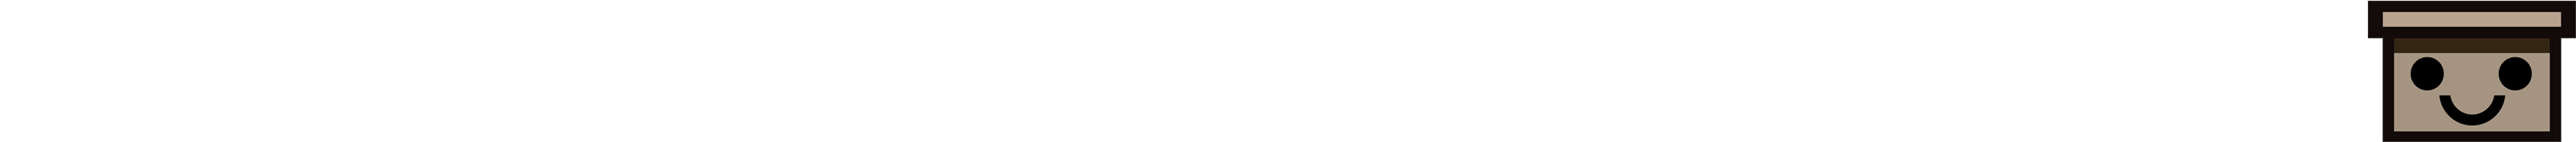 TheShoeboxDiorama_Logo_Long_White.png